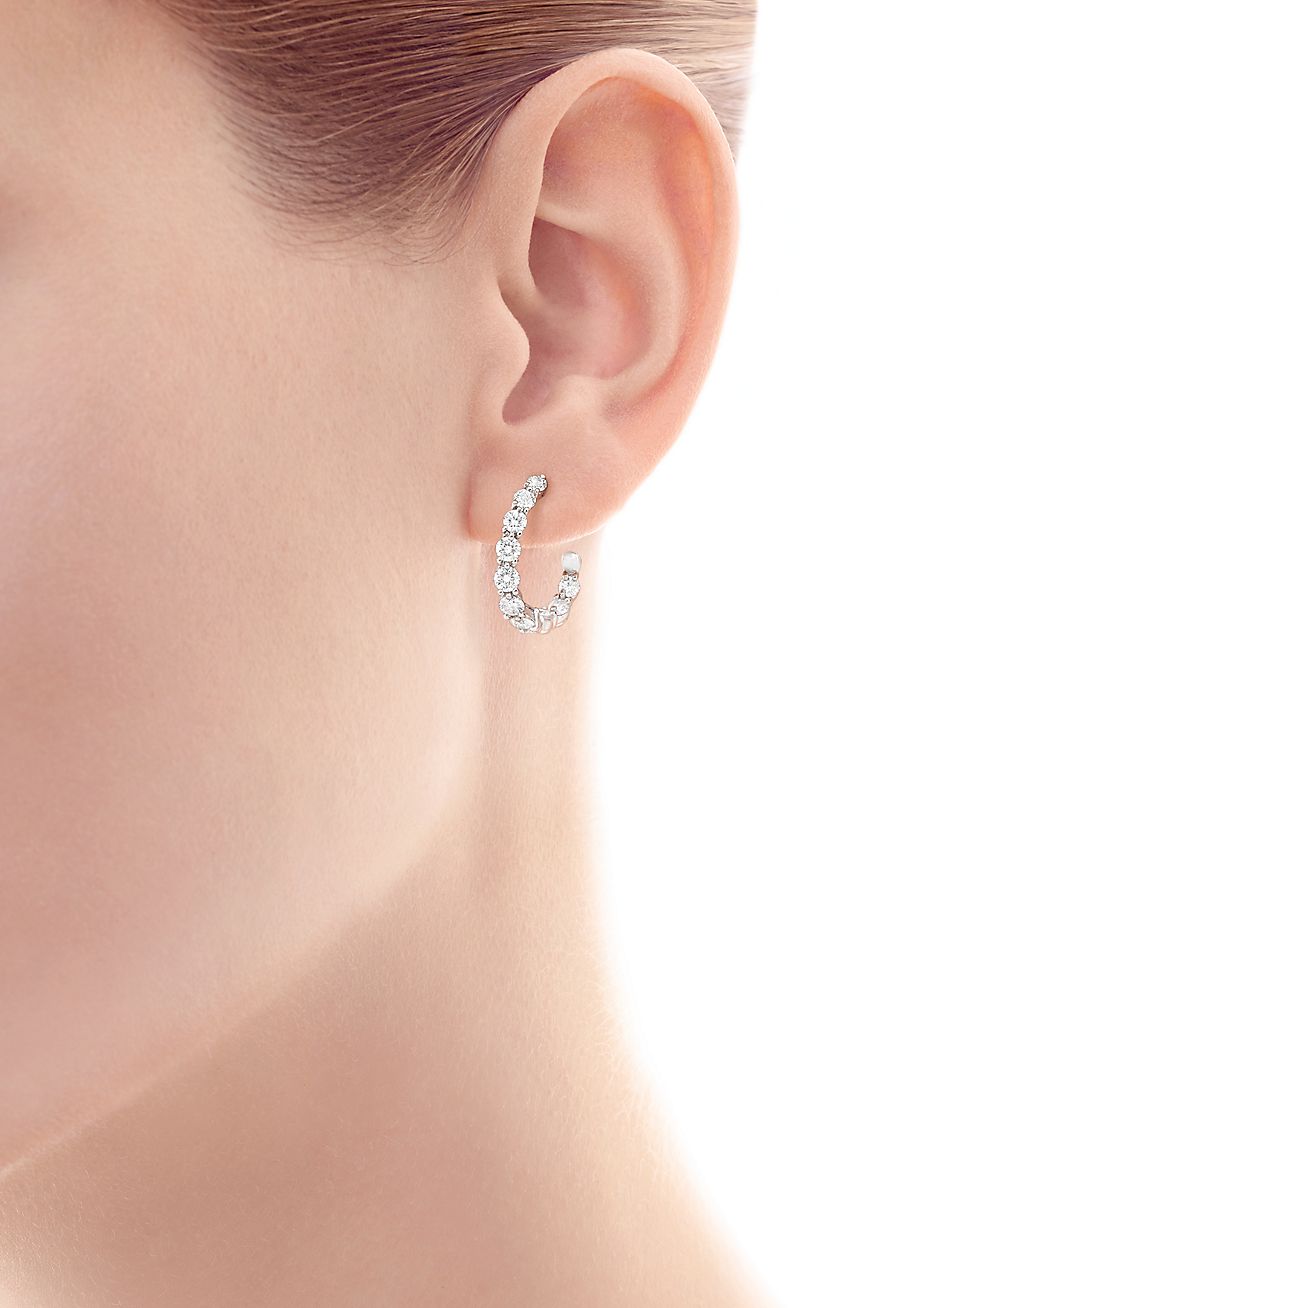 Inside-out hoop earrings of diamonds in 